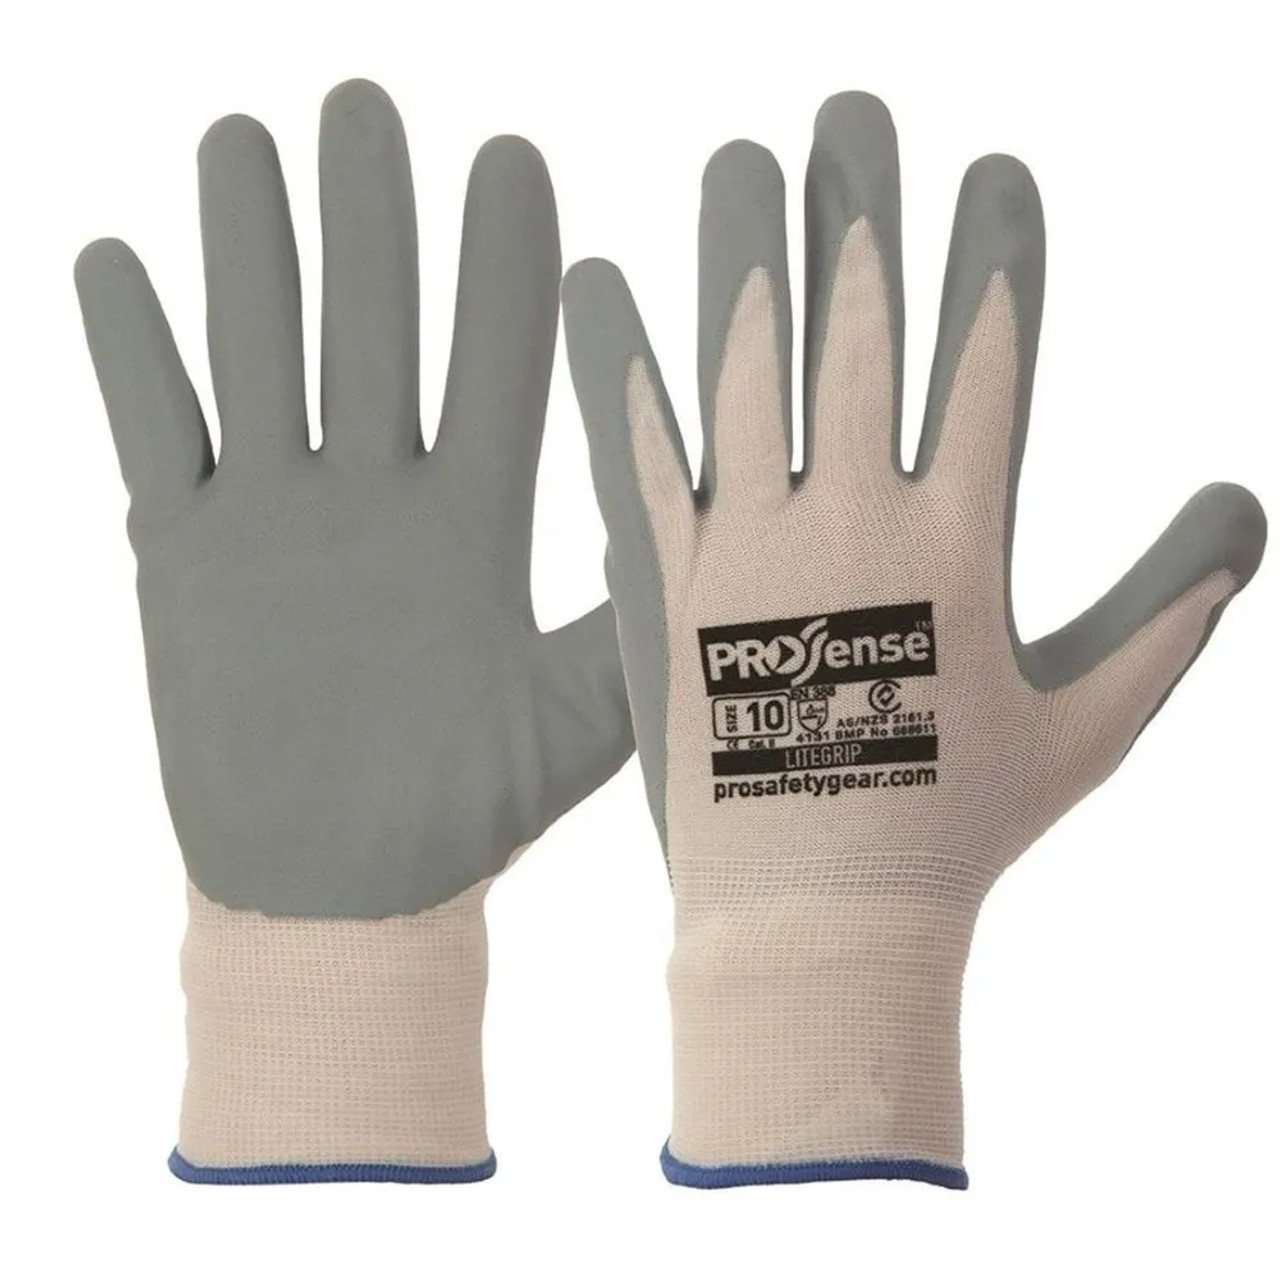 Prosense Litegrip Gloves